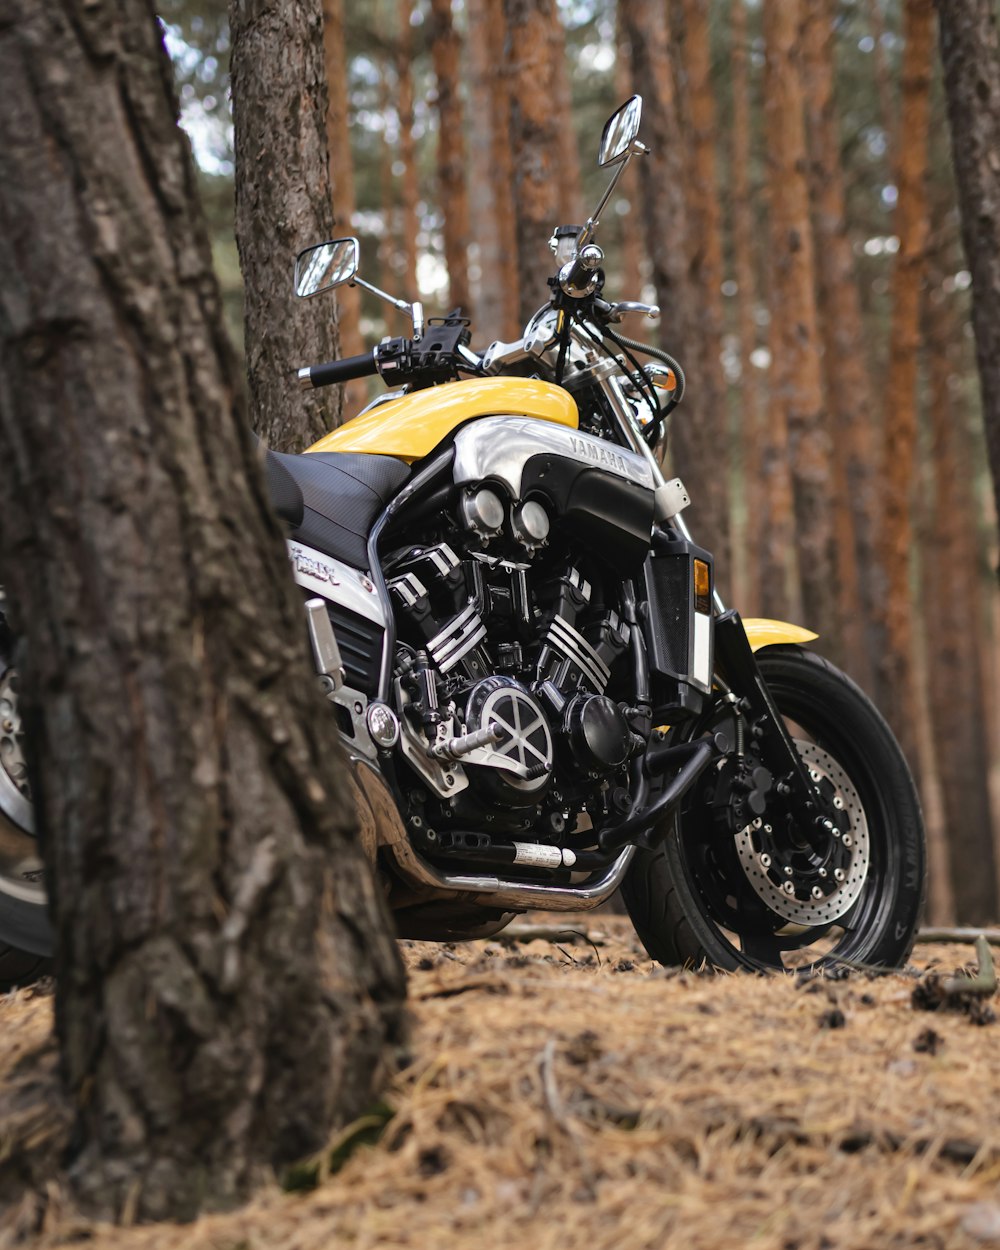 Foto de enfoque superficial de motocicleta negra y amarilla